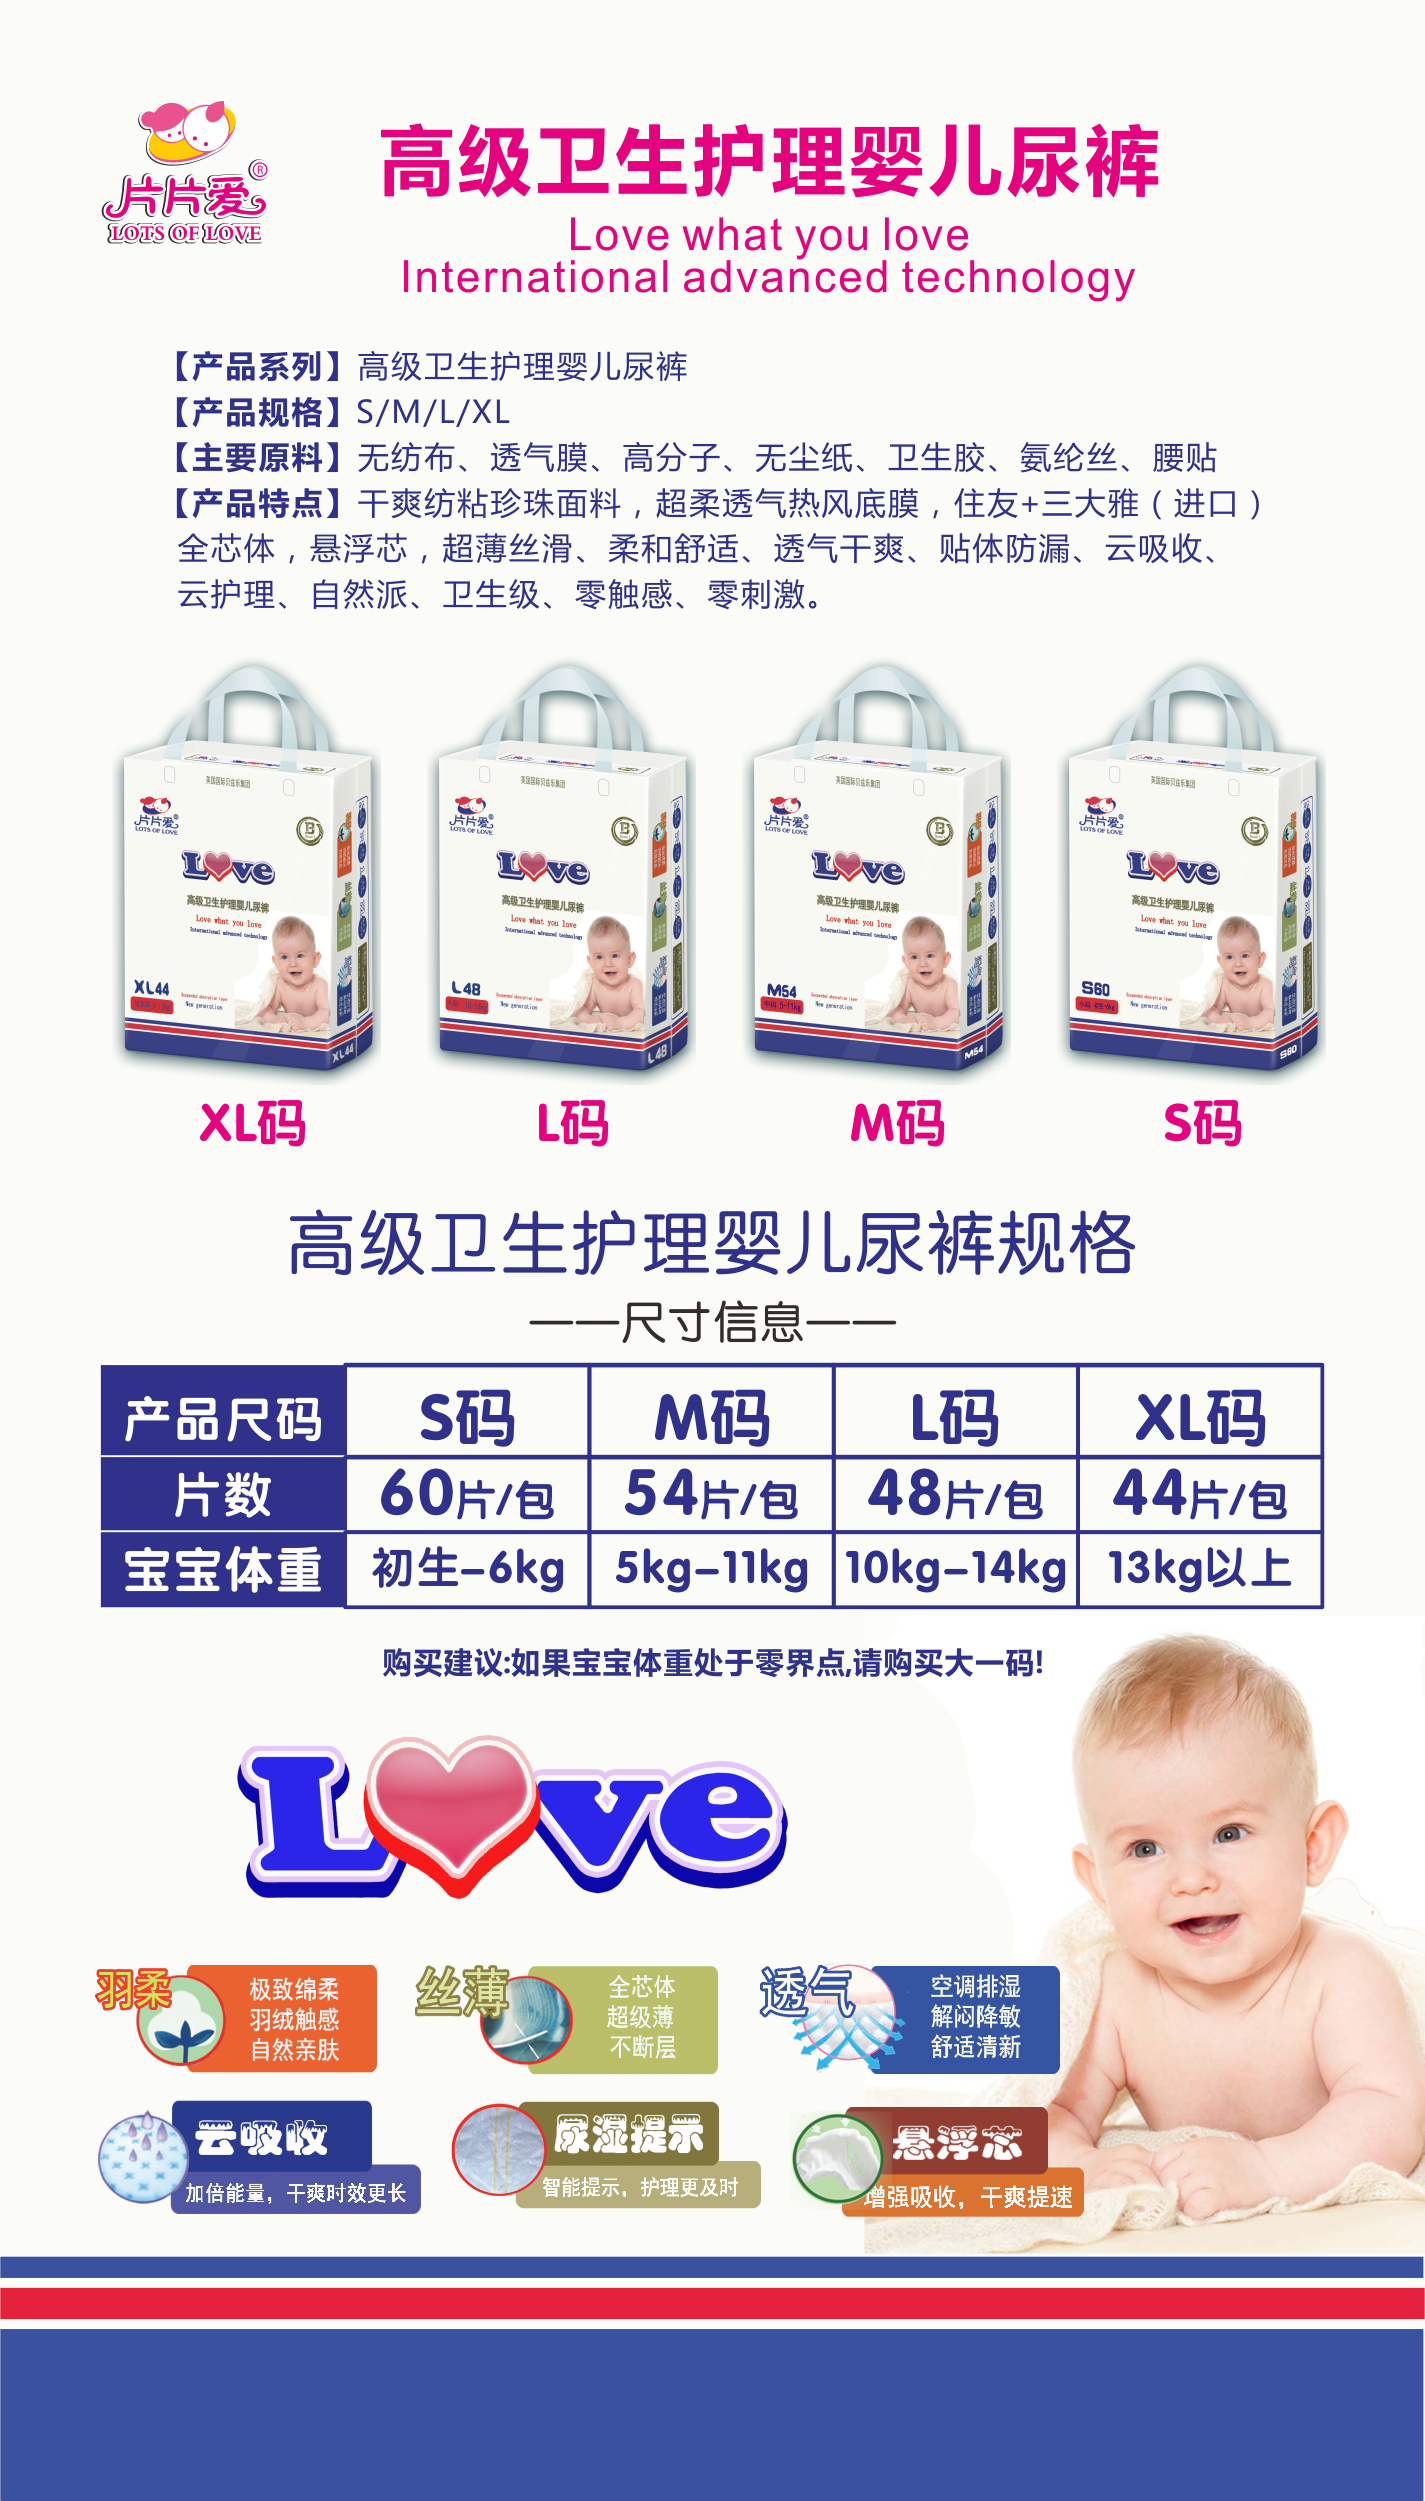 \"片片爱高级卫生护理婴儿纸尿裤M54,产品编号83501\"